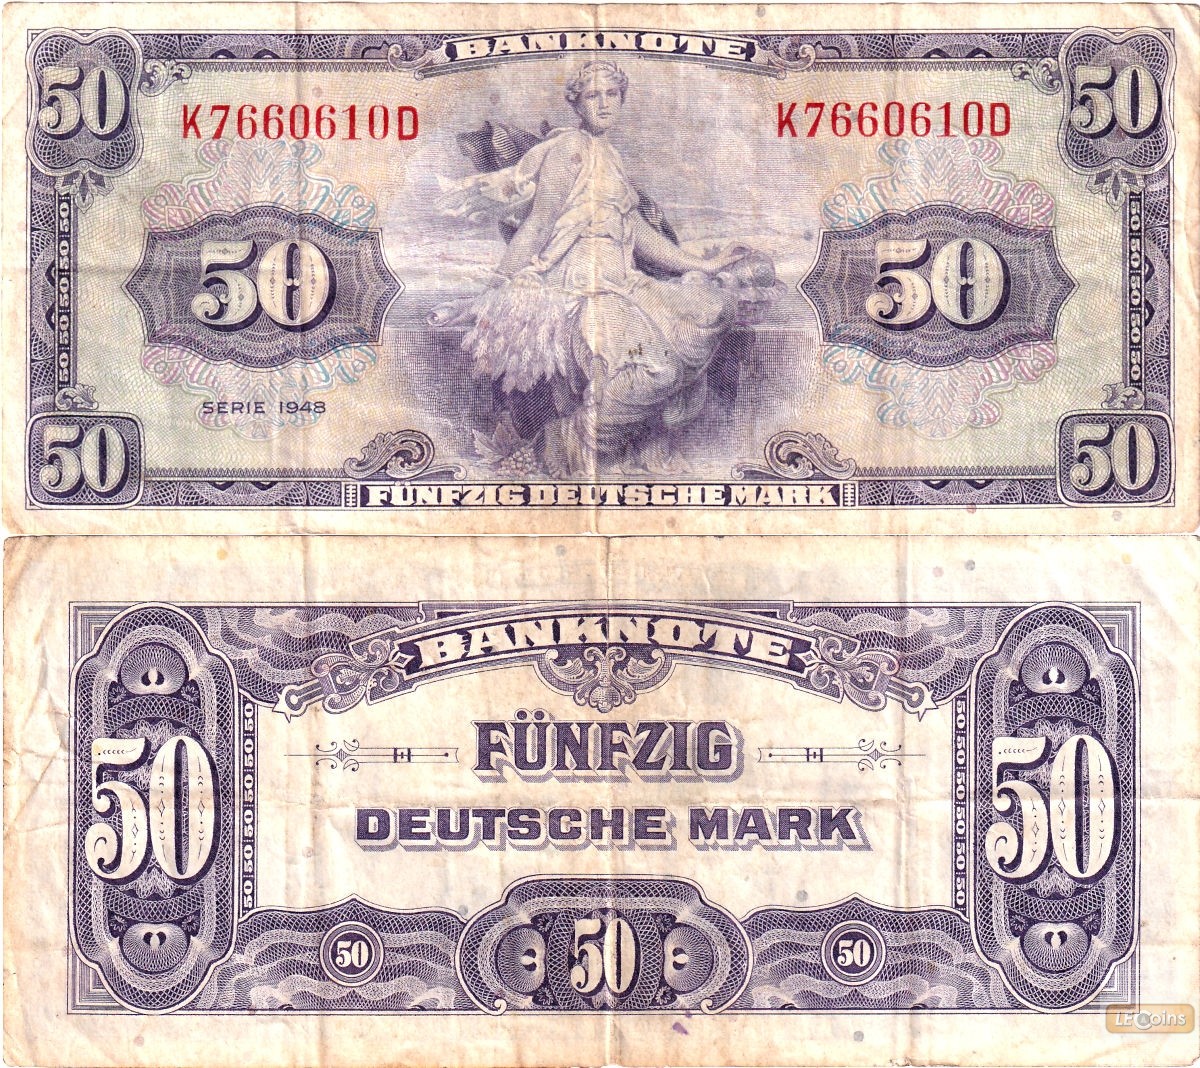 BDL: 50 DEUTSCHE MARK 1948  Ro.242  Serie D  IV